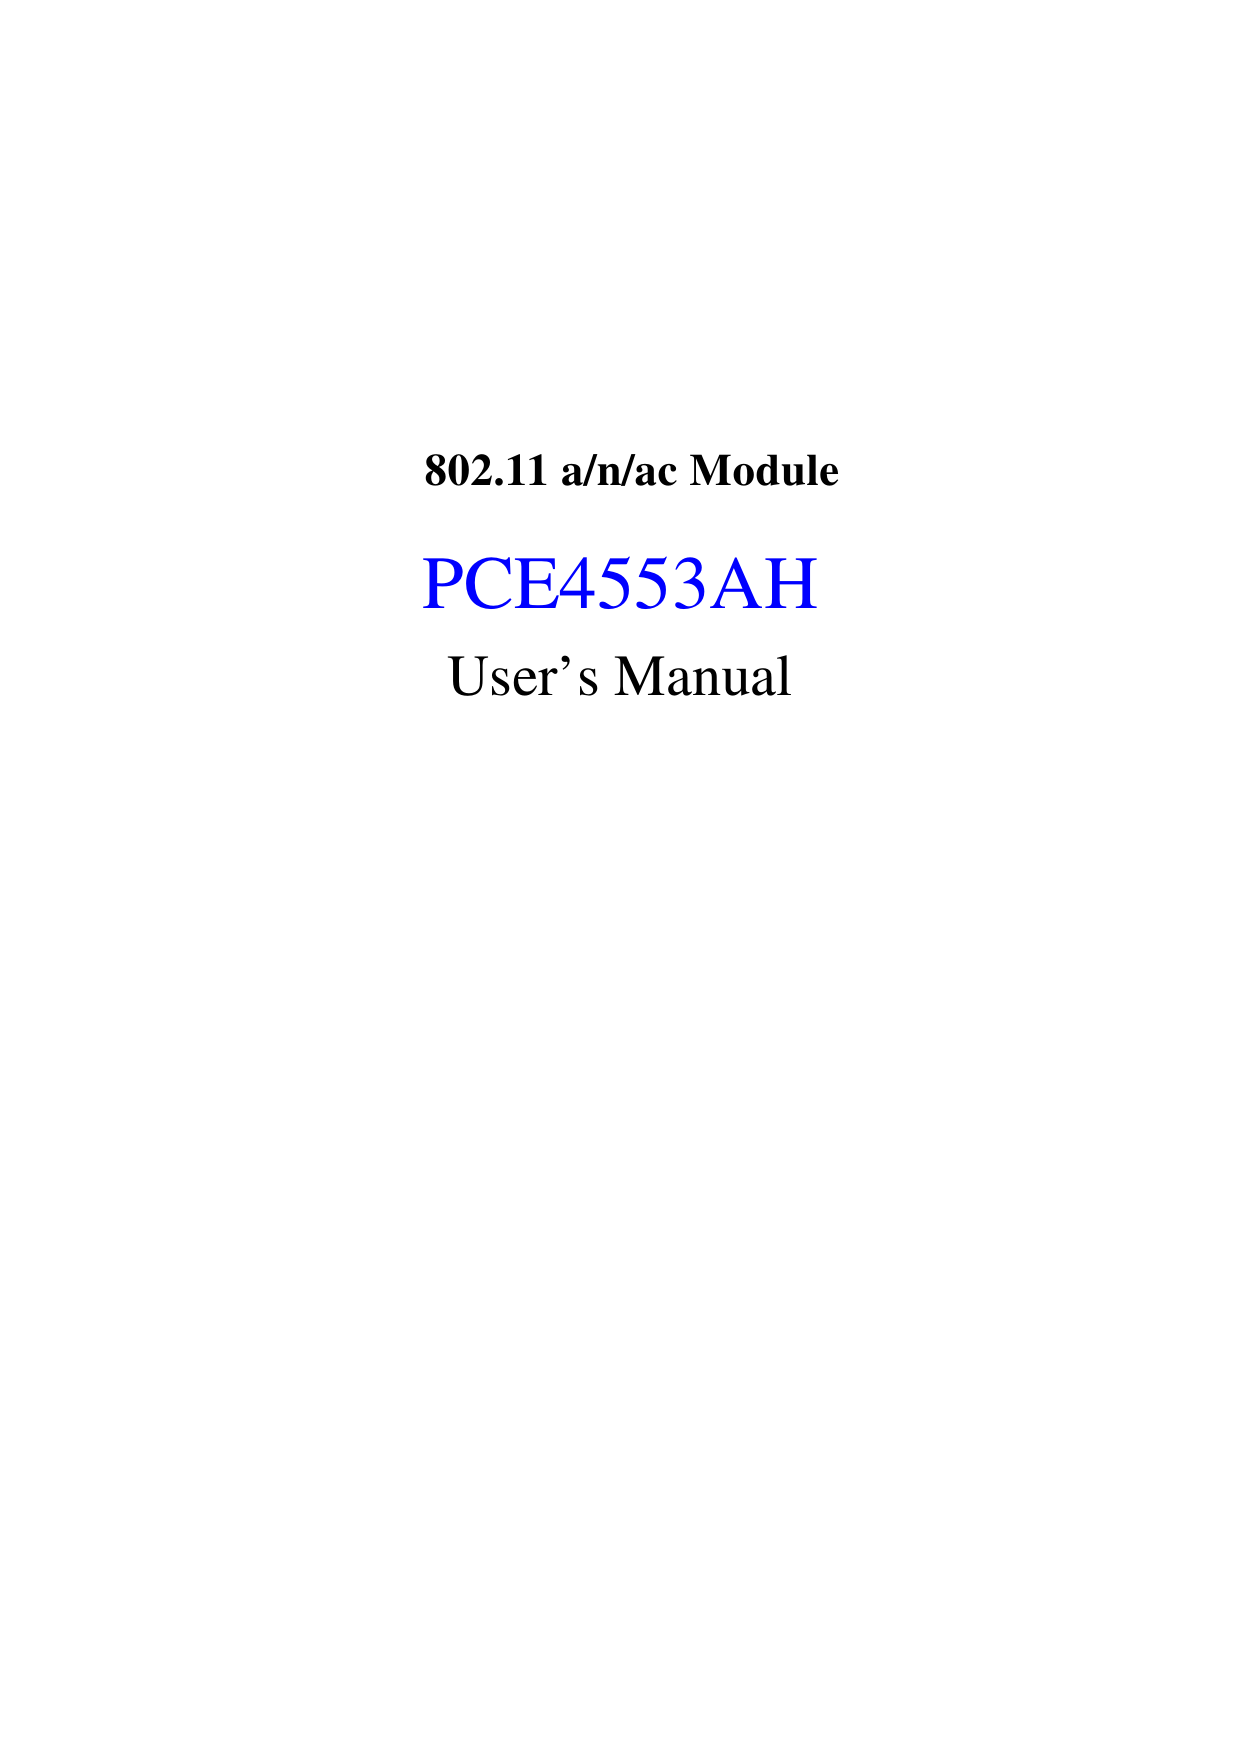     802.11 a/n/ac Module   PCE4553AH User’s Manual   